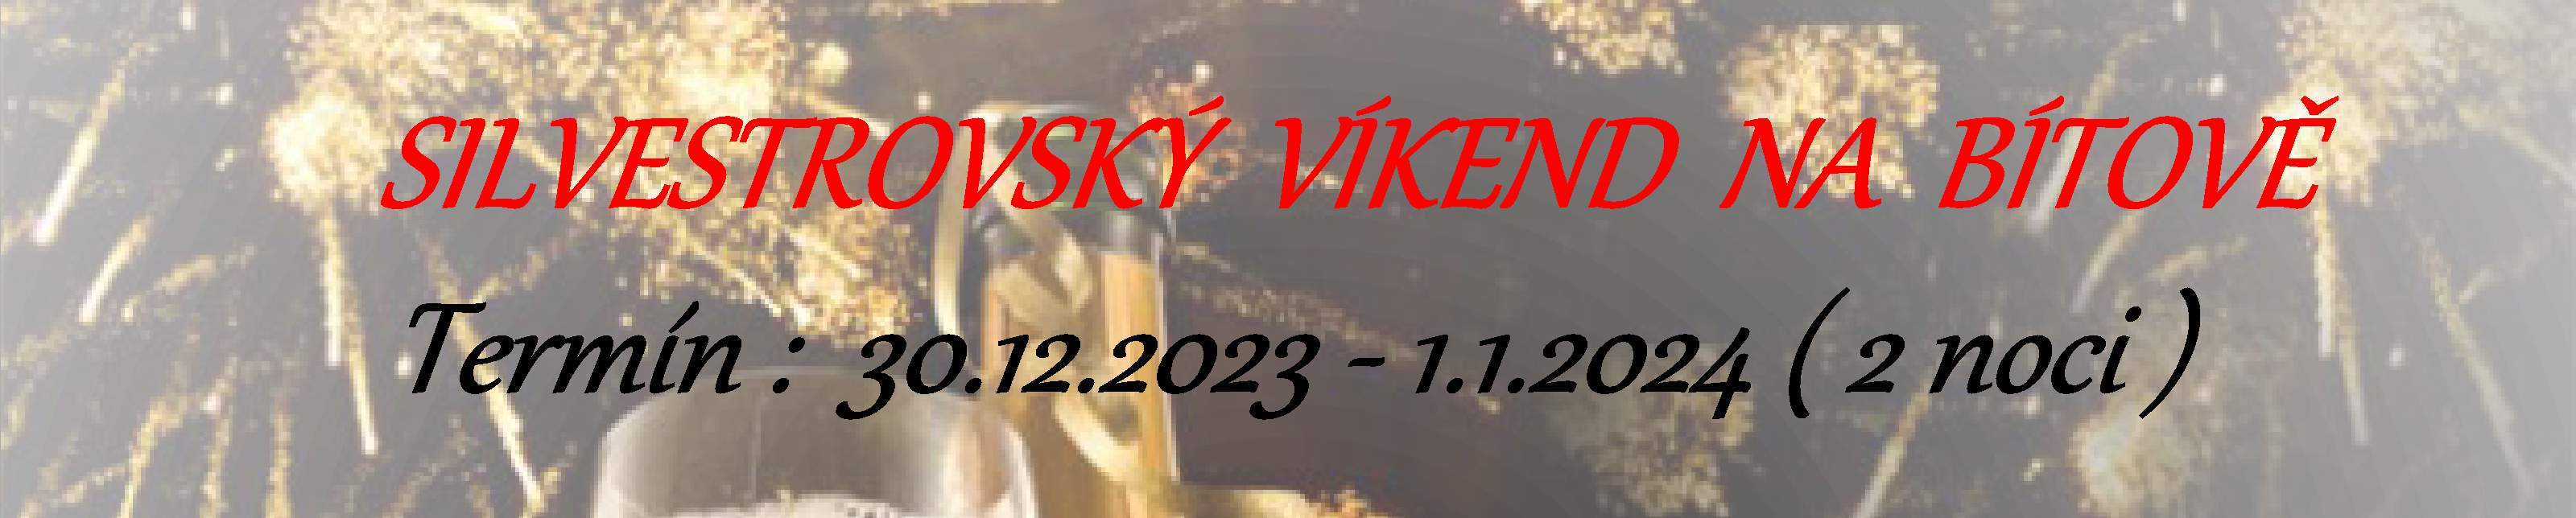 silvestr vikend 2023 baner - Silvestrovský víkend na Bítově